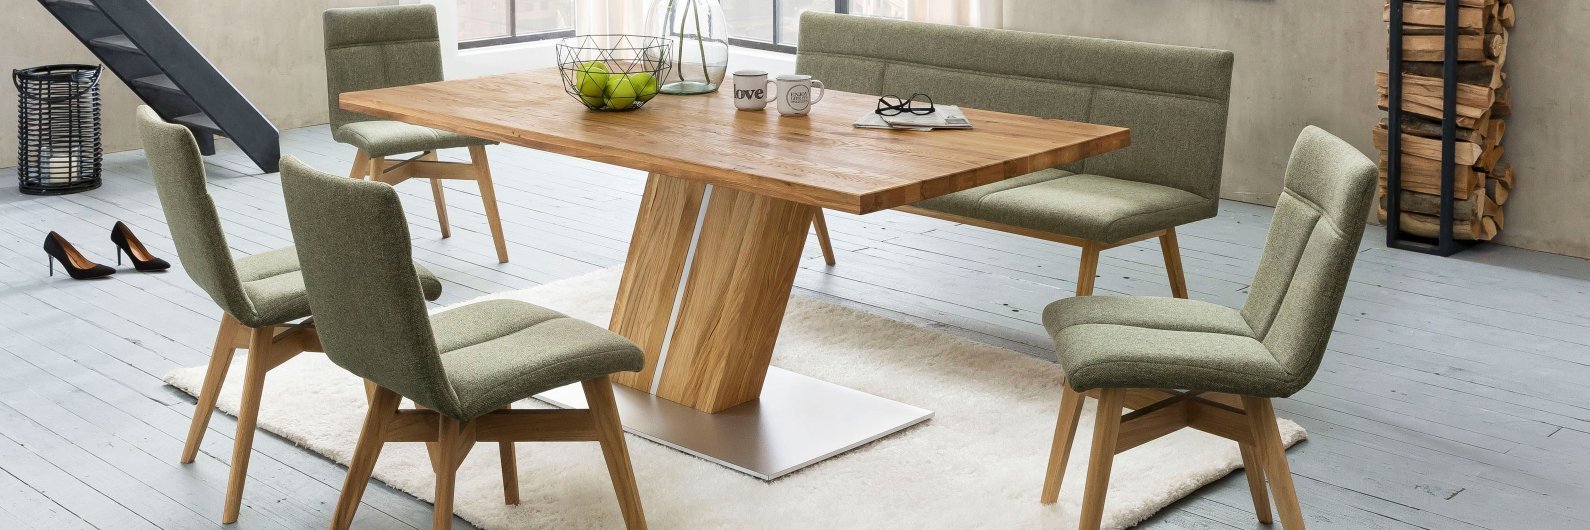 Standard Furniture Sitzbank Catania aus Massivholz für Ihr Esszimmer